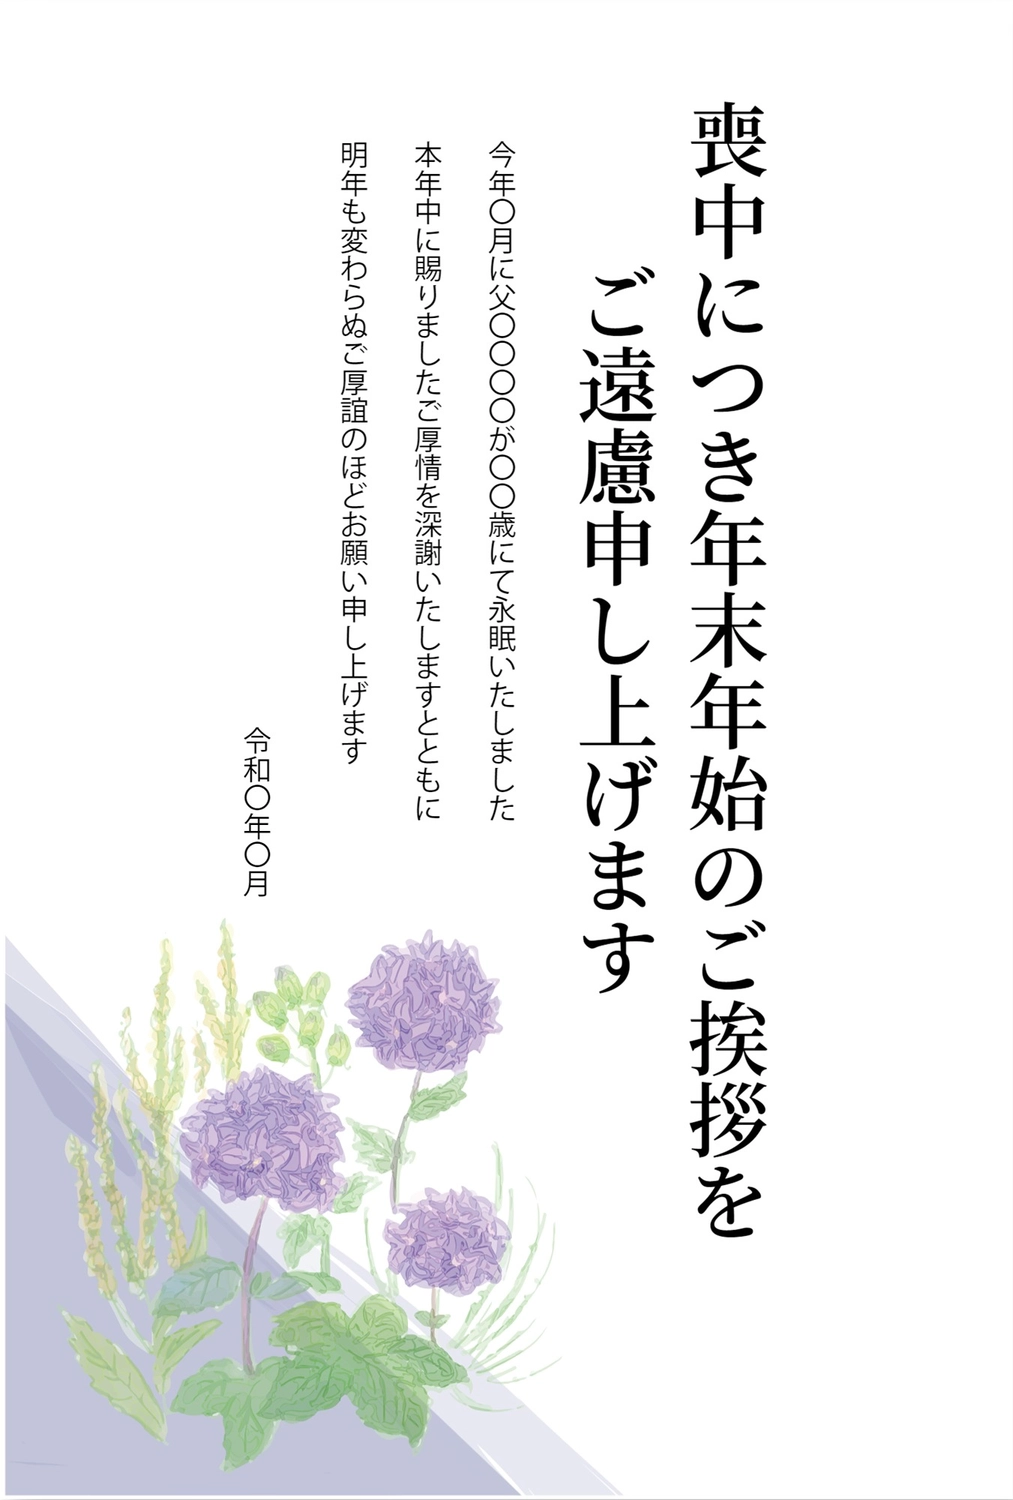 紫色の花の喪中はがき, 新年贺卡, 紫花, 死亡, 哀悼明信片 模板